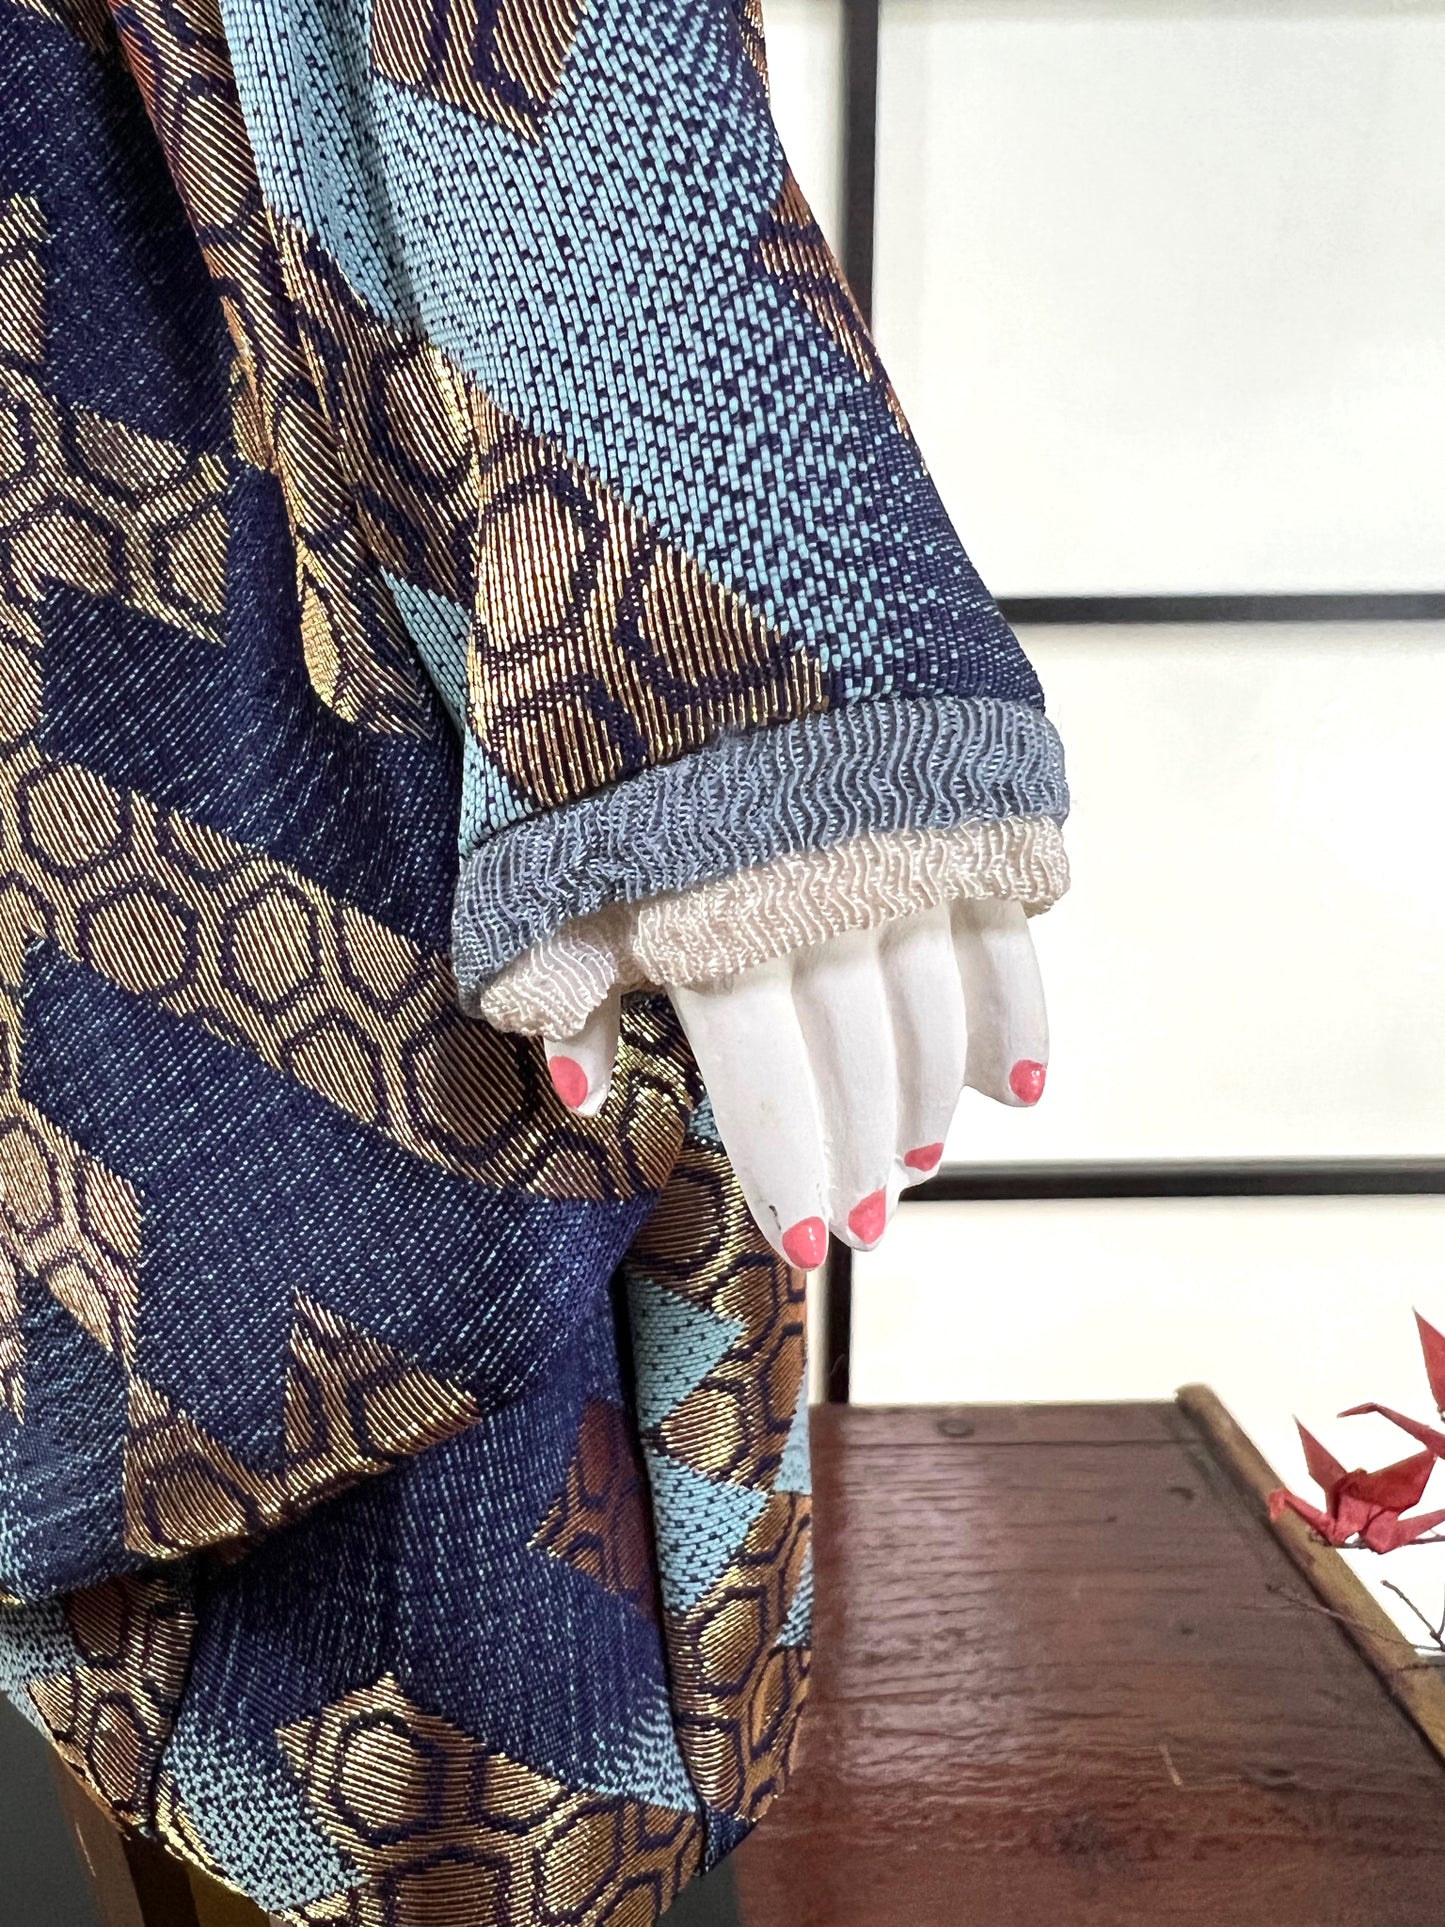 poupée japonaise Ichimatsu garçon, en kimono en soie bleu et beige, détail de la main gauche